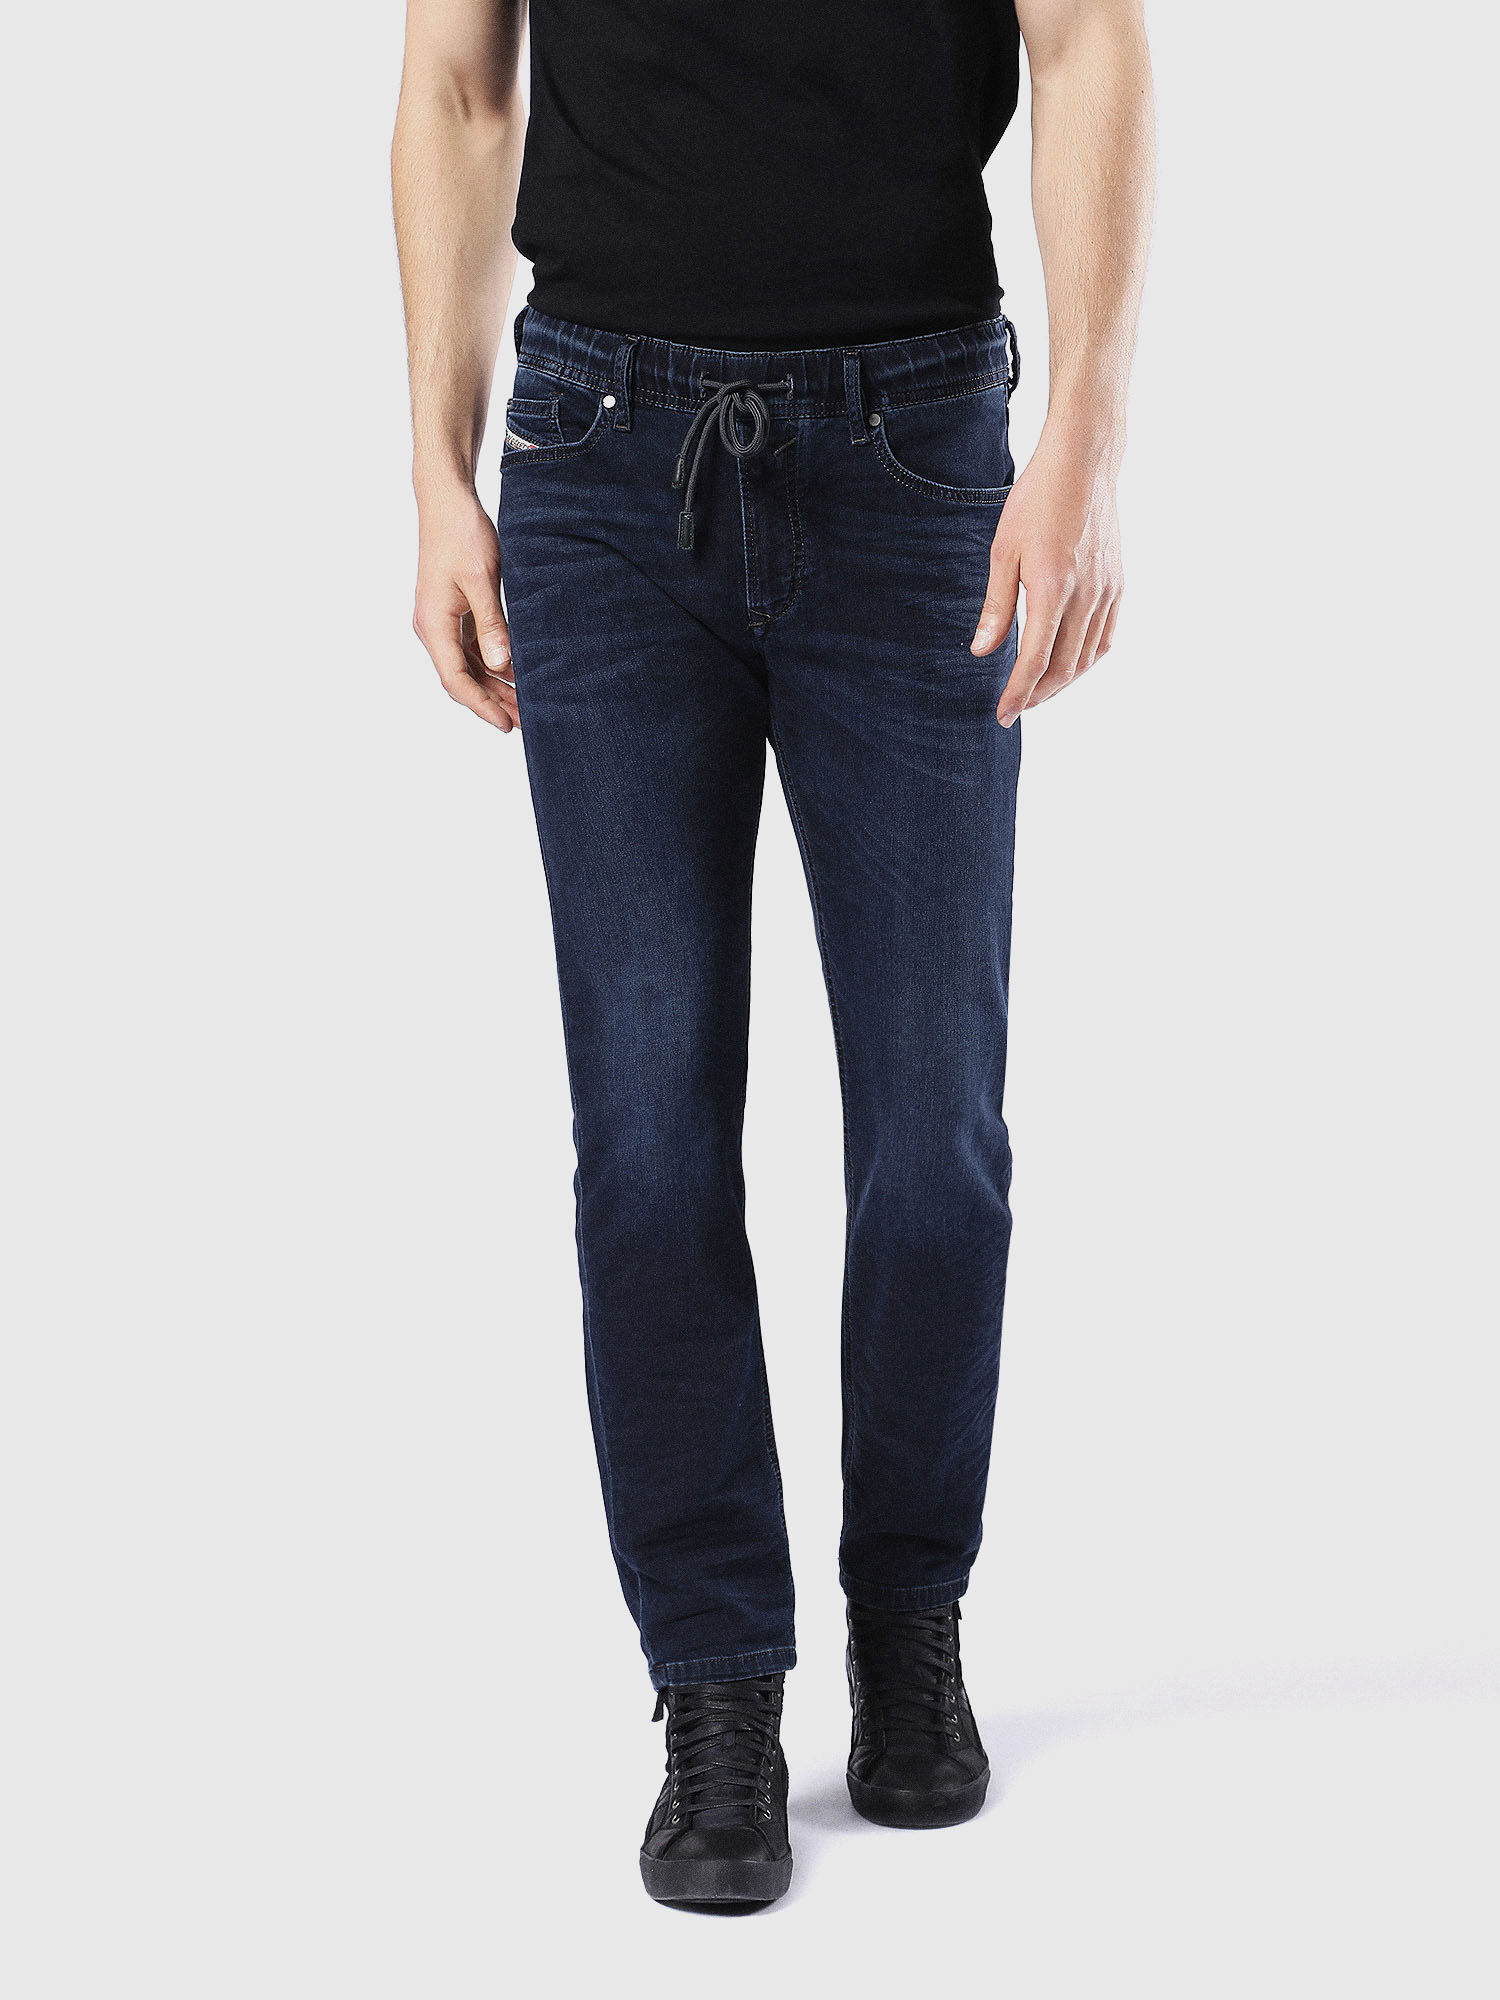 WAYKEE JOGGJEANS 0842W Straight Dark blue Jeans | Diesel